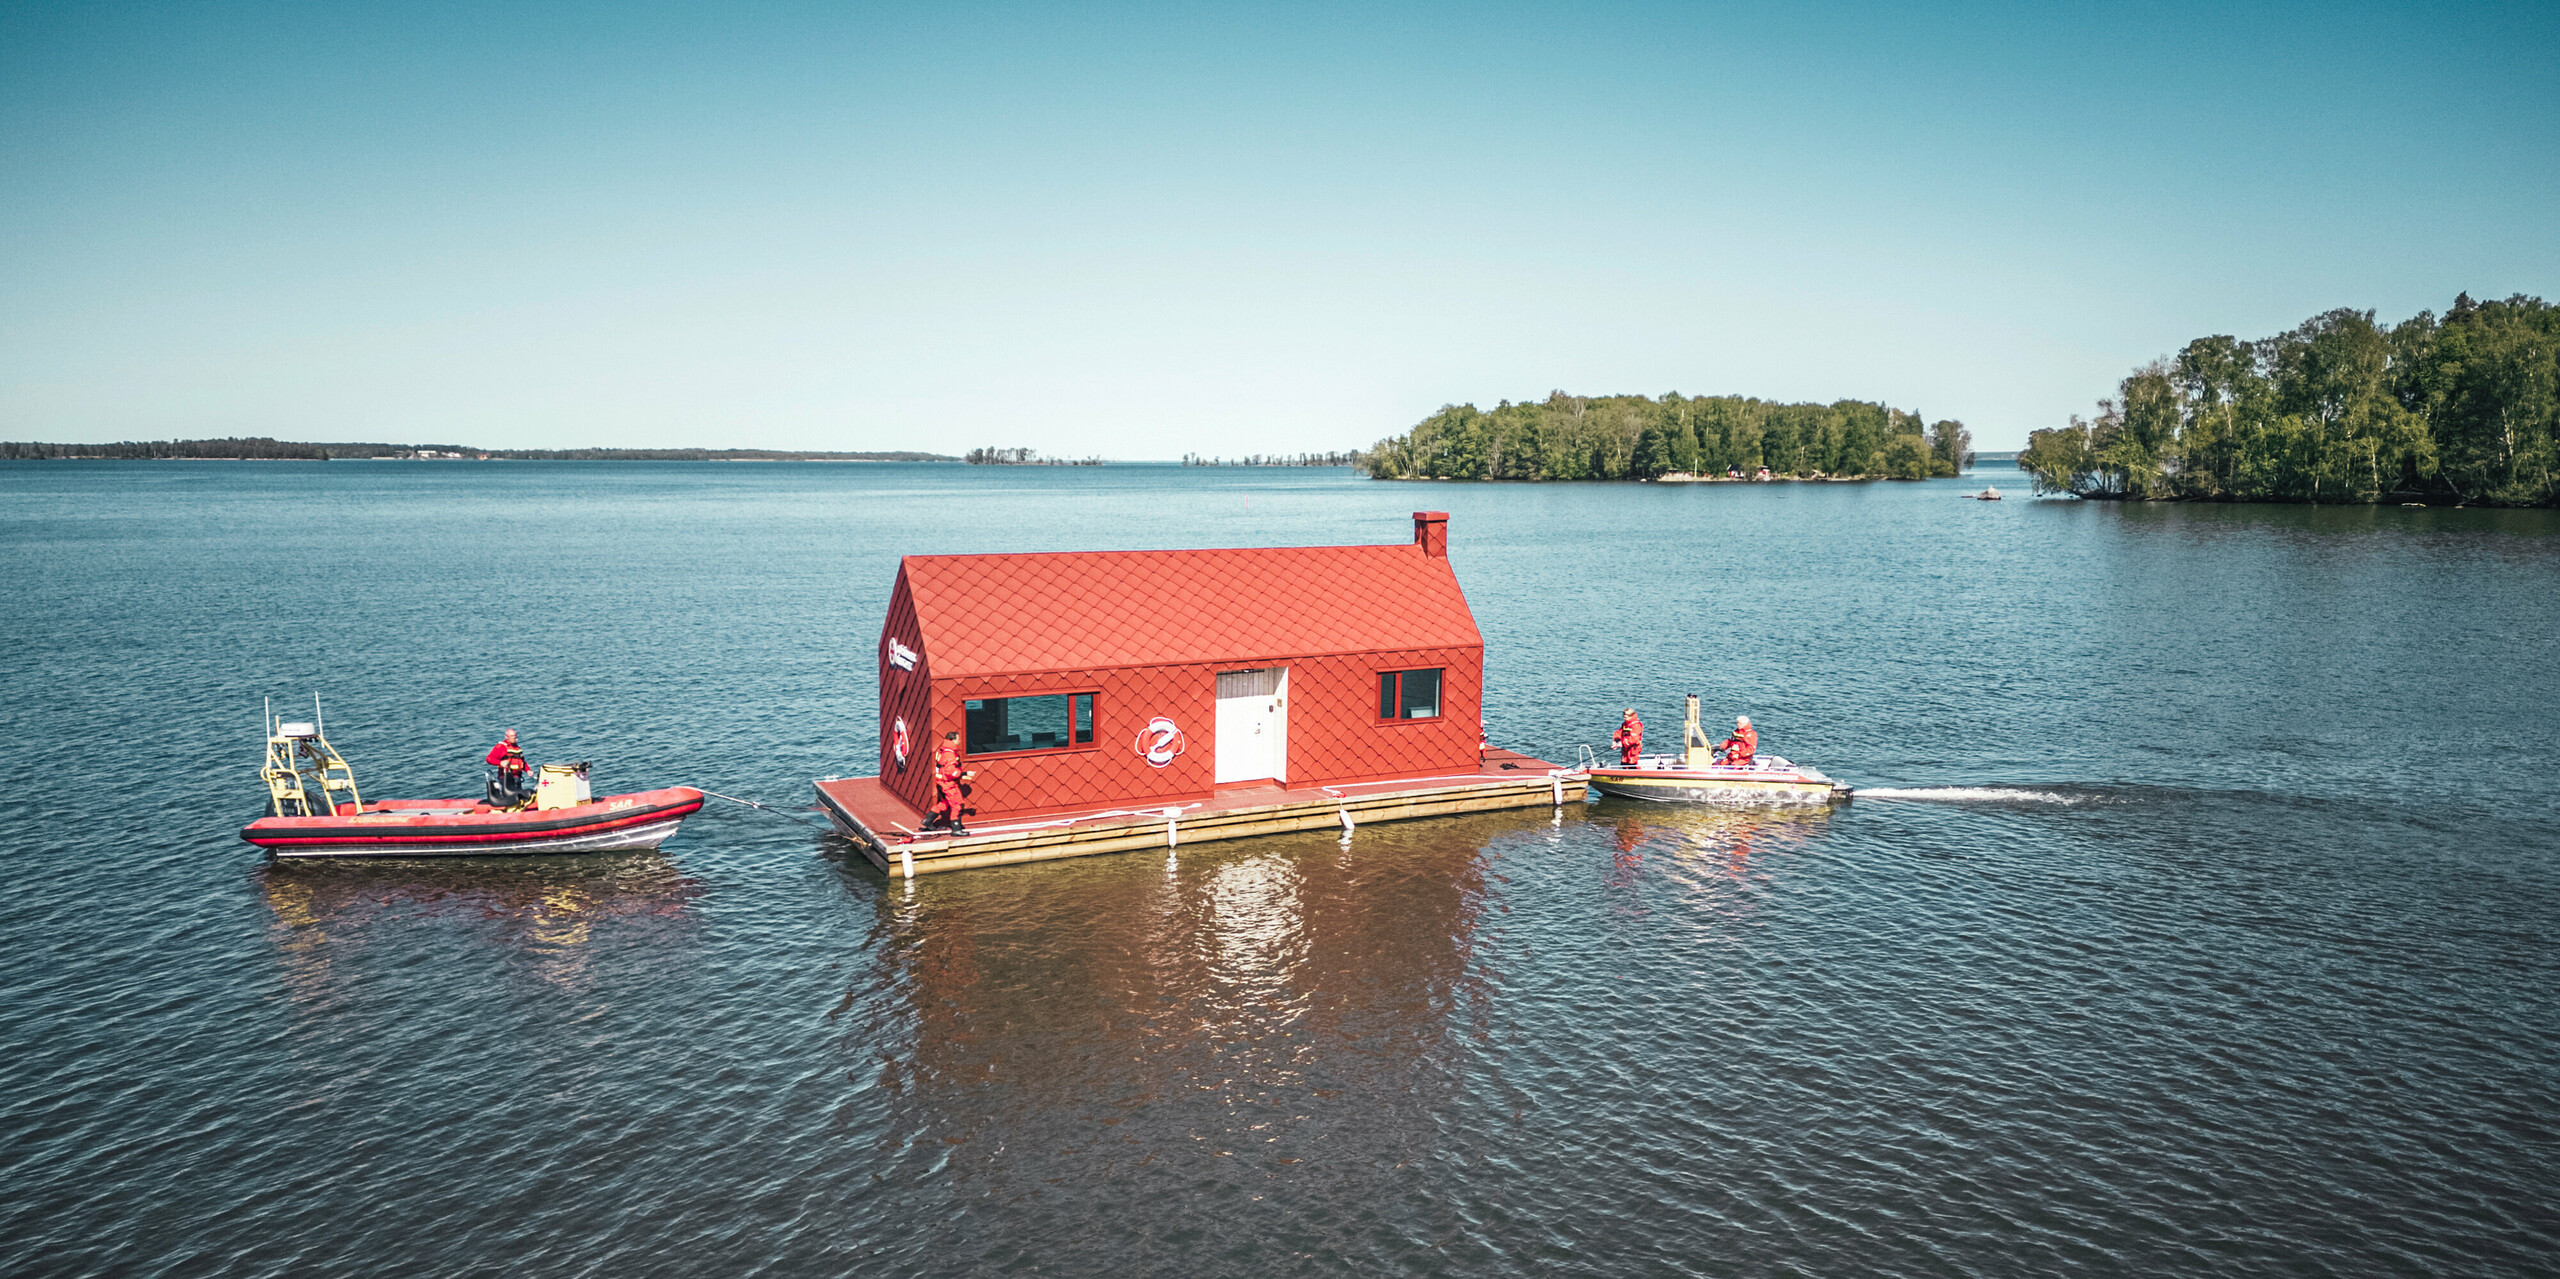 Letecký pohled na dům vodní záchranné stanice na jezeře Hjälmaren ve Švédsku, obklopený klidnou vodní plochou. Nápadná, tmavě červená budova, vybavená PREFA falcovanými a fasádními šablonami 29×29, trůní na plovoucím těle a je připravena nabídnout útočiště a operační základnu. Vedle nádražního domu, který vyniká svou charakteristickou barvou a tvarem, hlídkují dva záchranné čluny, které symbolizují neustálou ostražitost a připravenost vodních záchranářů.